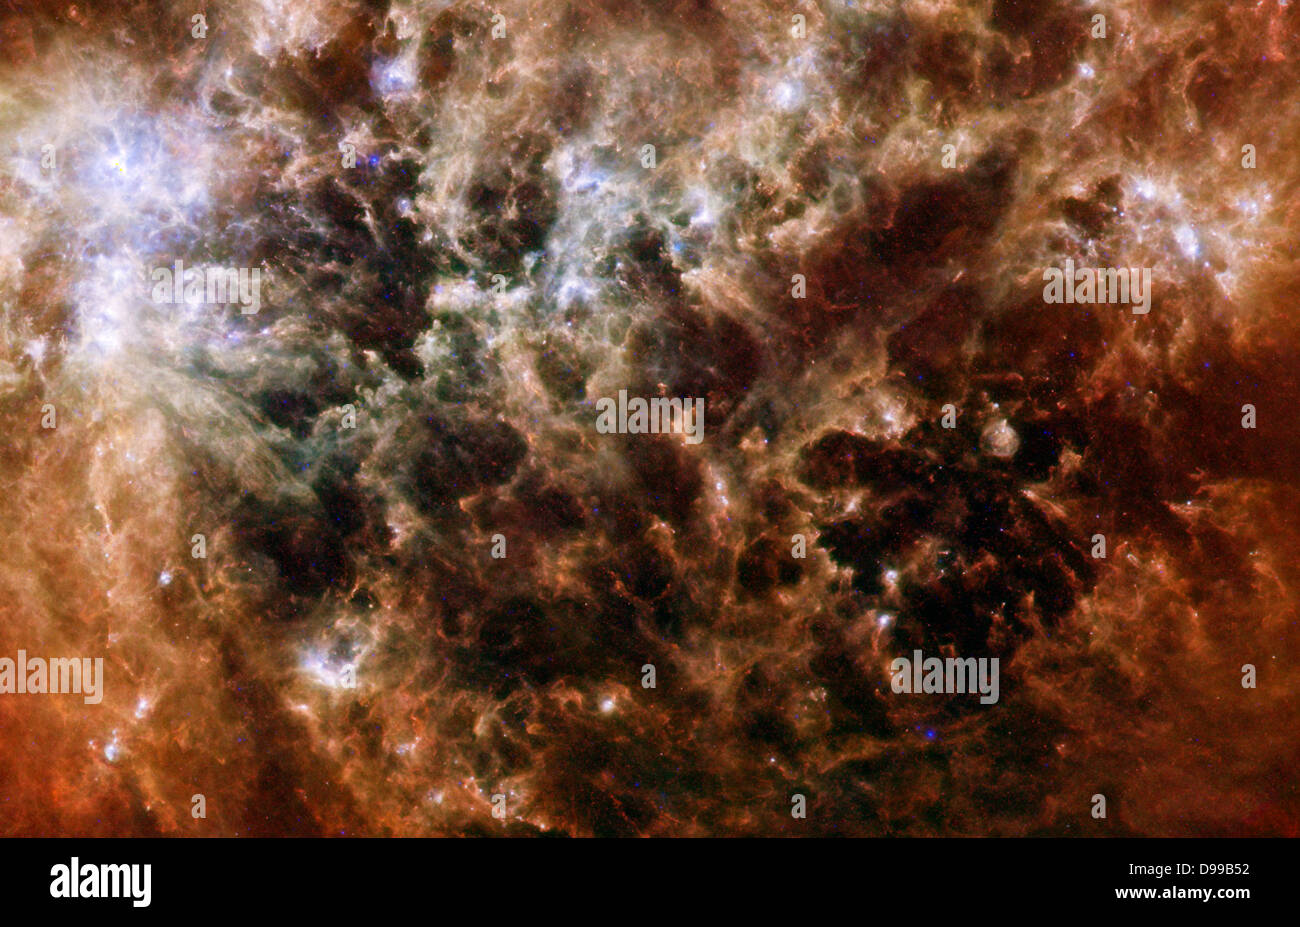 Dieses Bild zeigt die großen Magellanschen Wolke Galaxie im Infrarotlicht durch das Weltraumteleskop Herschel gesehen. Stockfoto